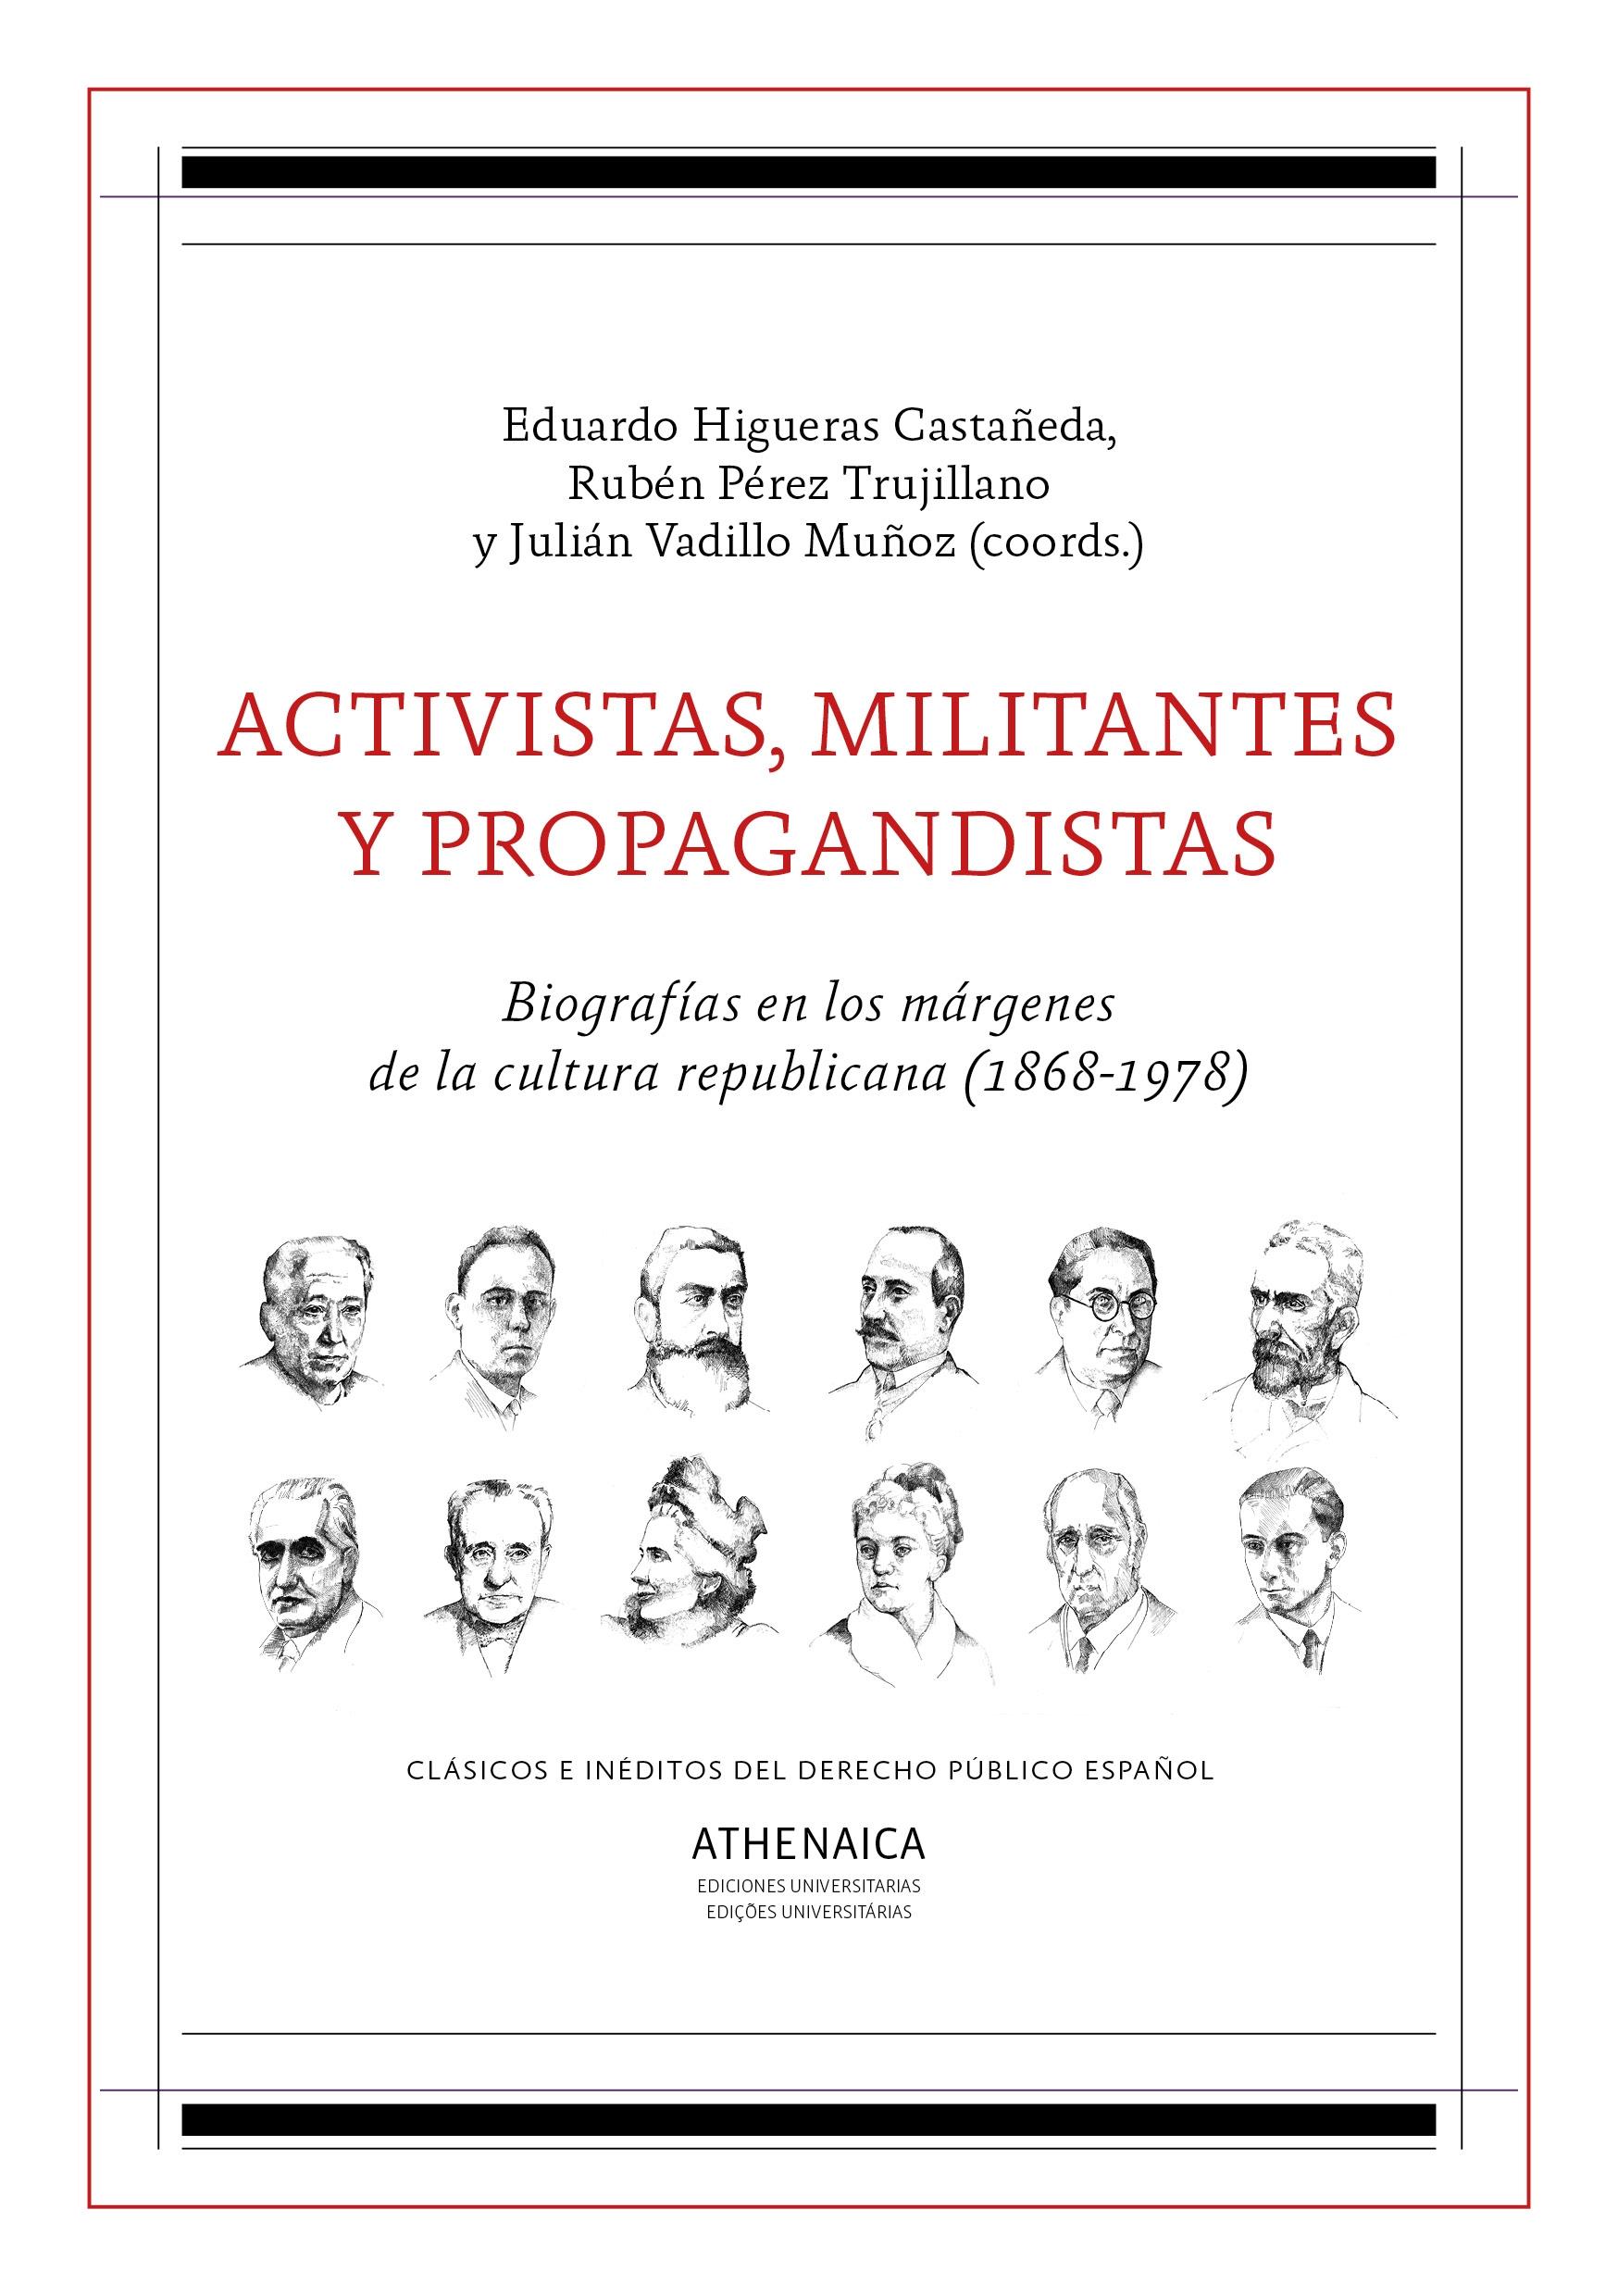 Activistas, Militantes y Propagandistas "Biografías en los Márgenes de la Cultura Republicana (1868-1978)"